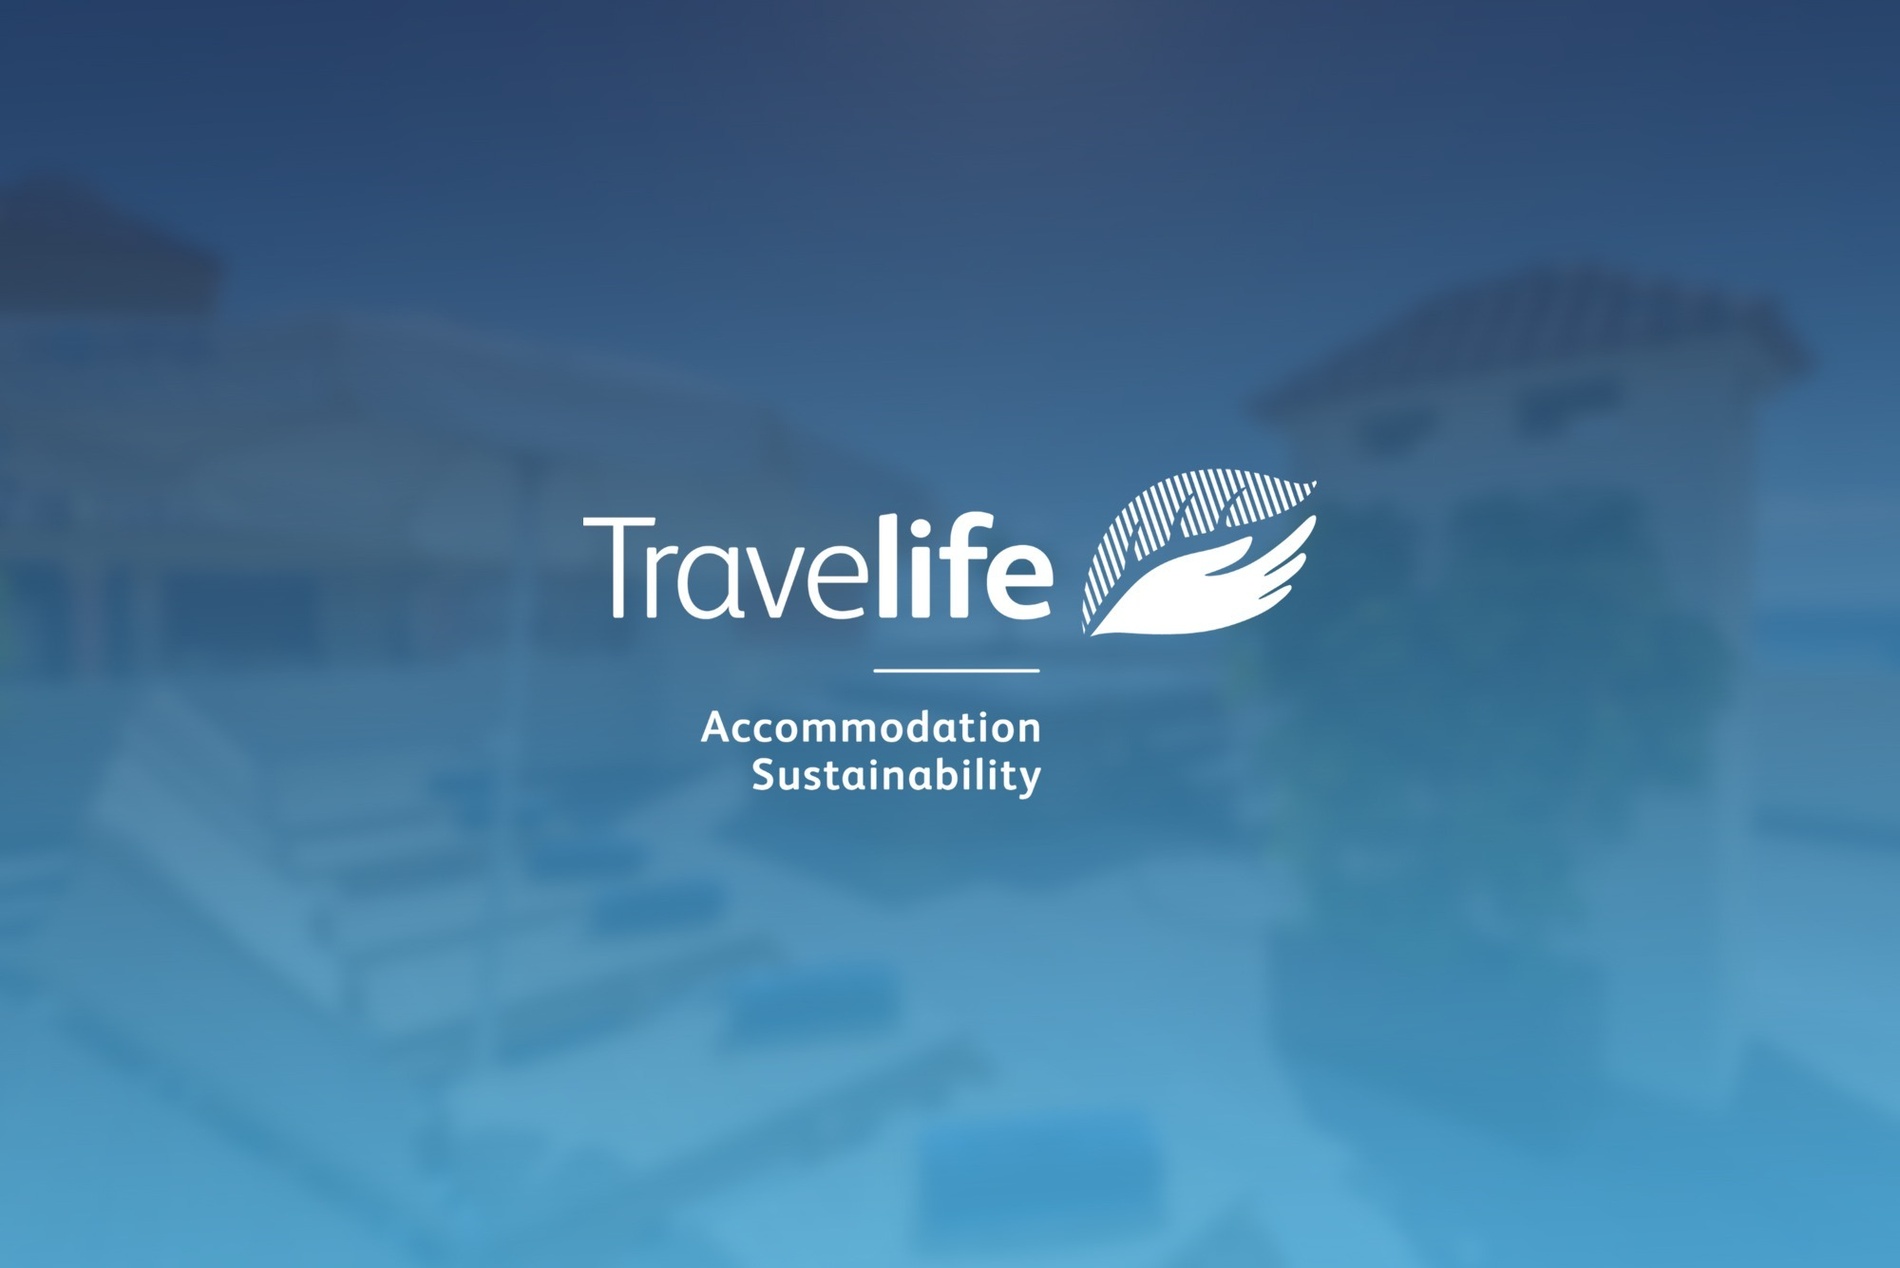 логотип компании travellife на синем фоне